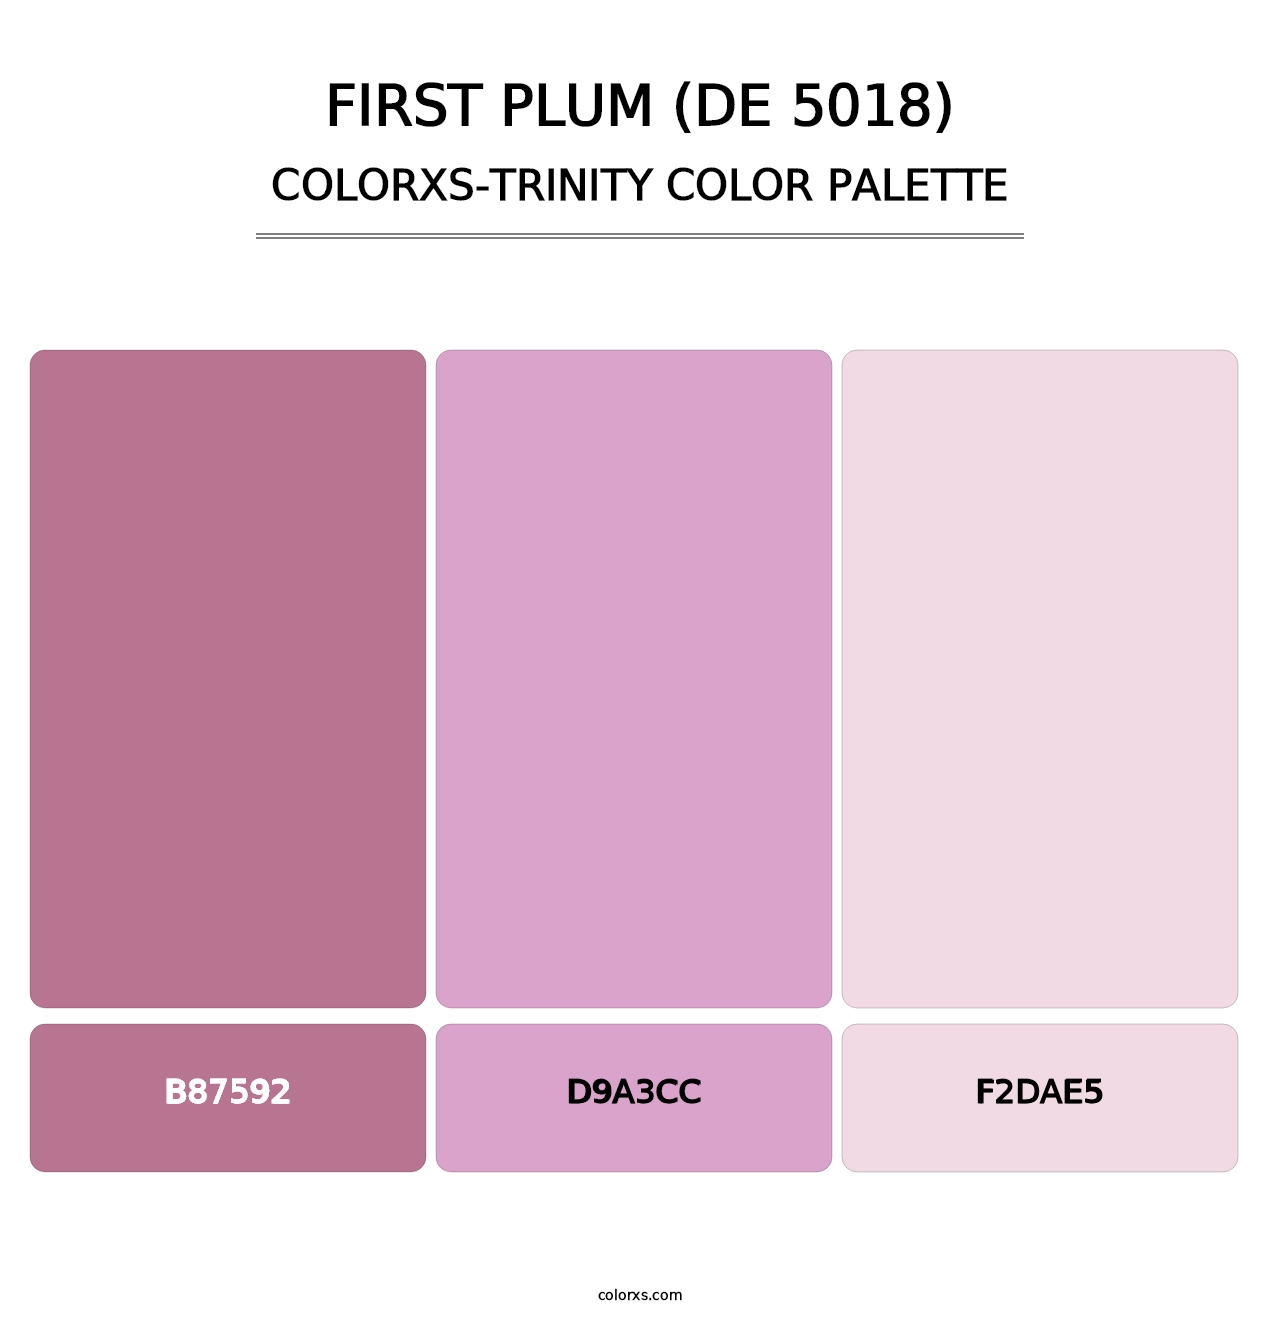 First Plum (DE 5018) - Colorxs Trinity Palette